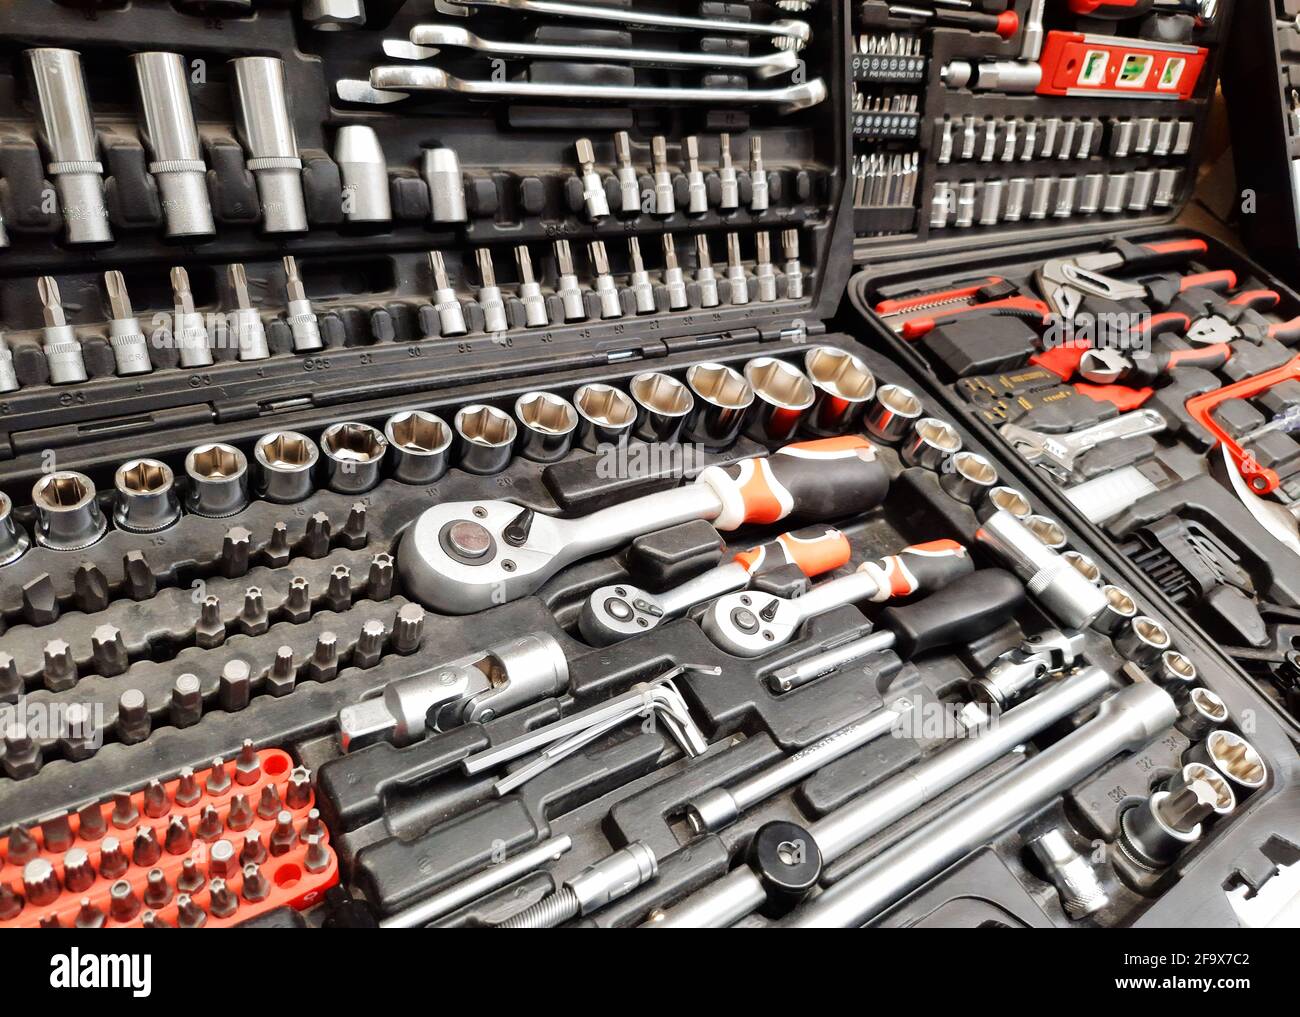 POZNAN, POL - 09 DE MARZO de 2021: Kits de herramientas puestos a la venta  en una ferretería Fotografía de stock - Alamy